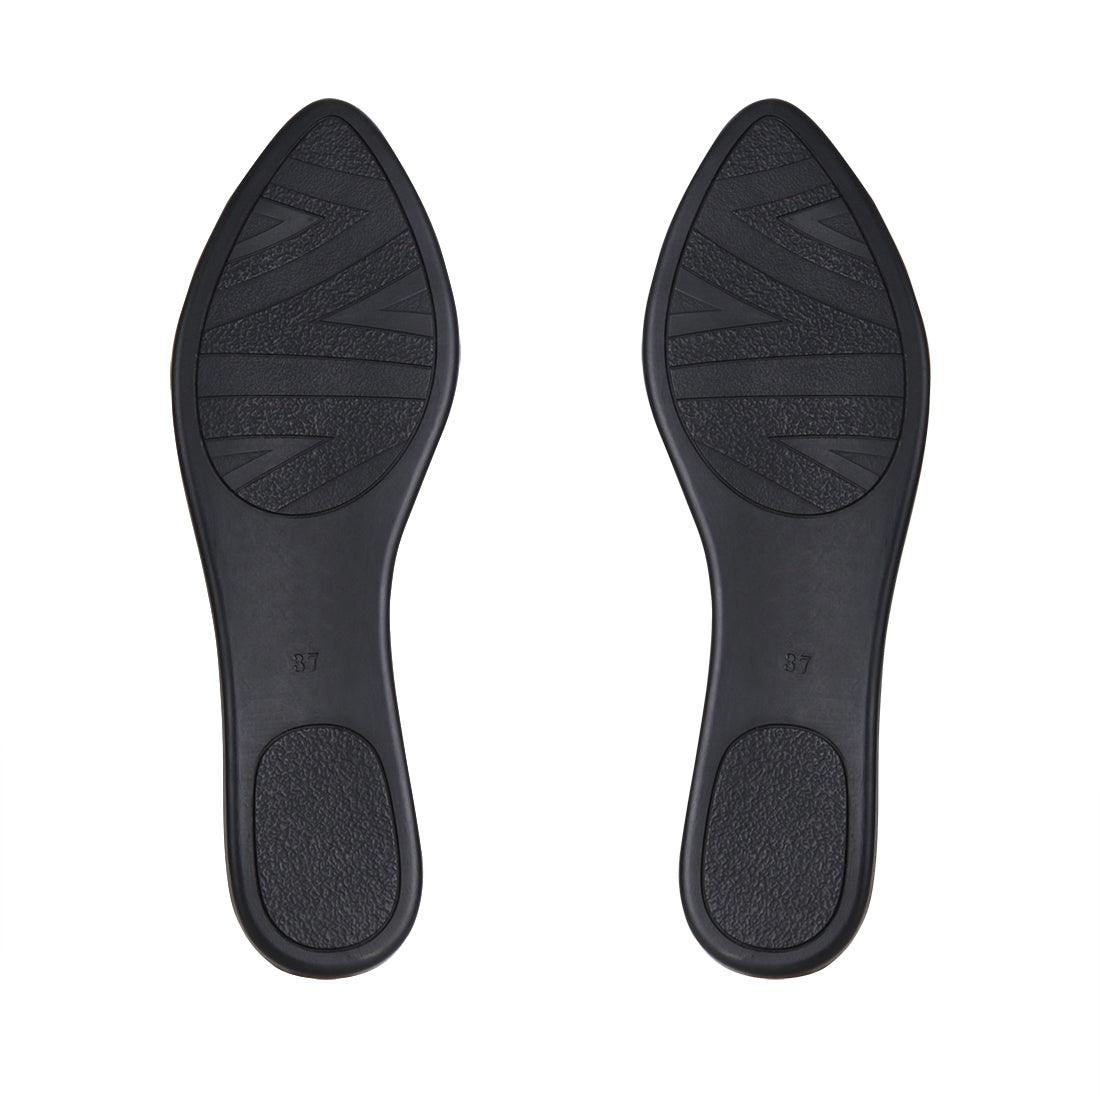 White Round Toe Shoe Plush - CANVAEGYPT